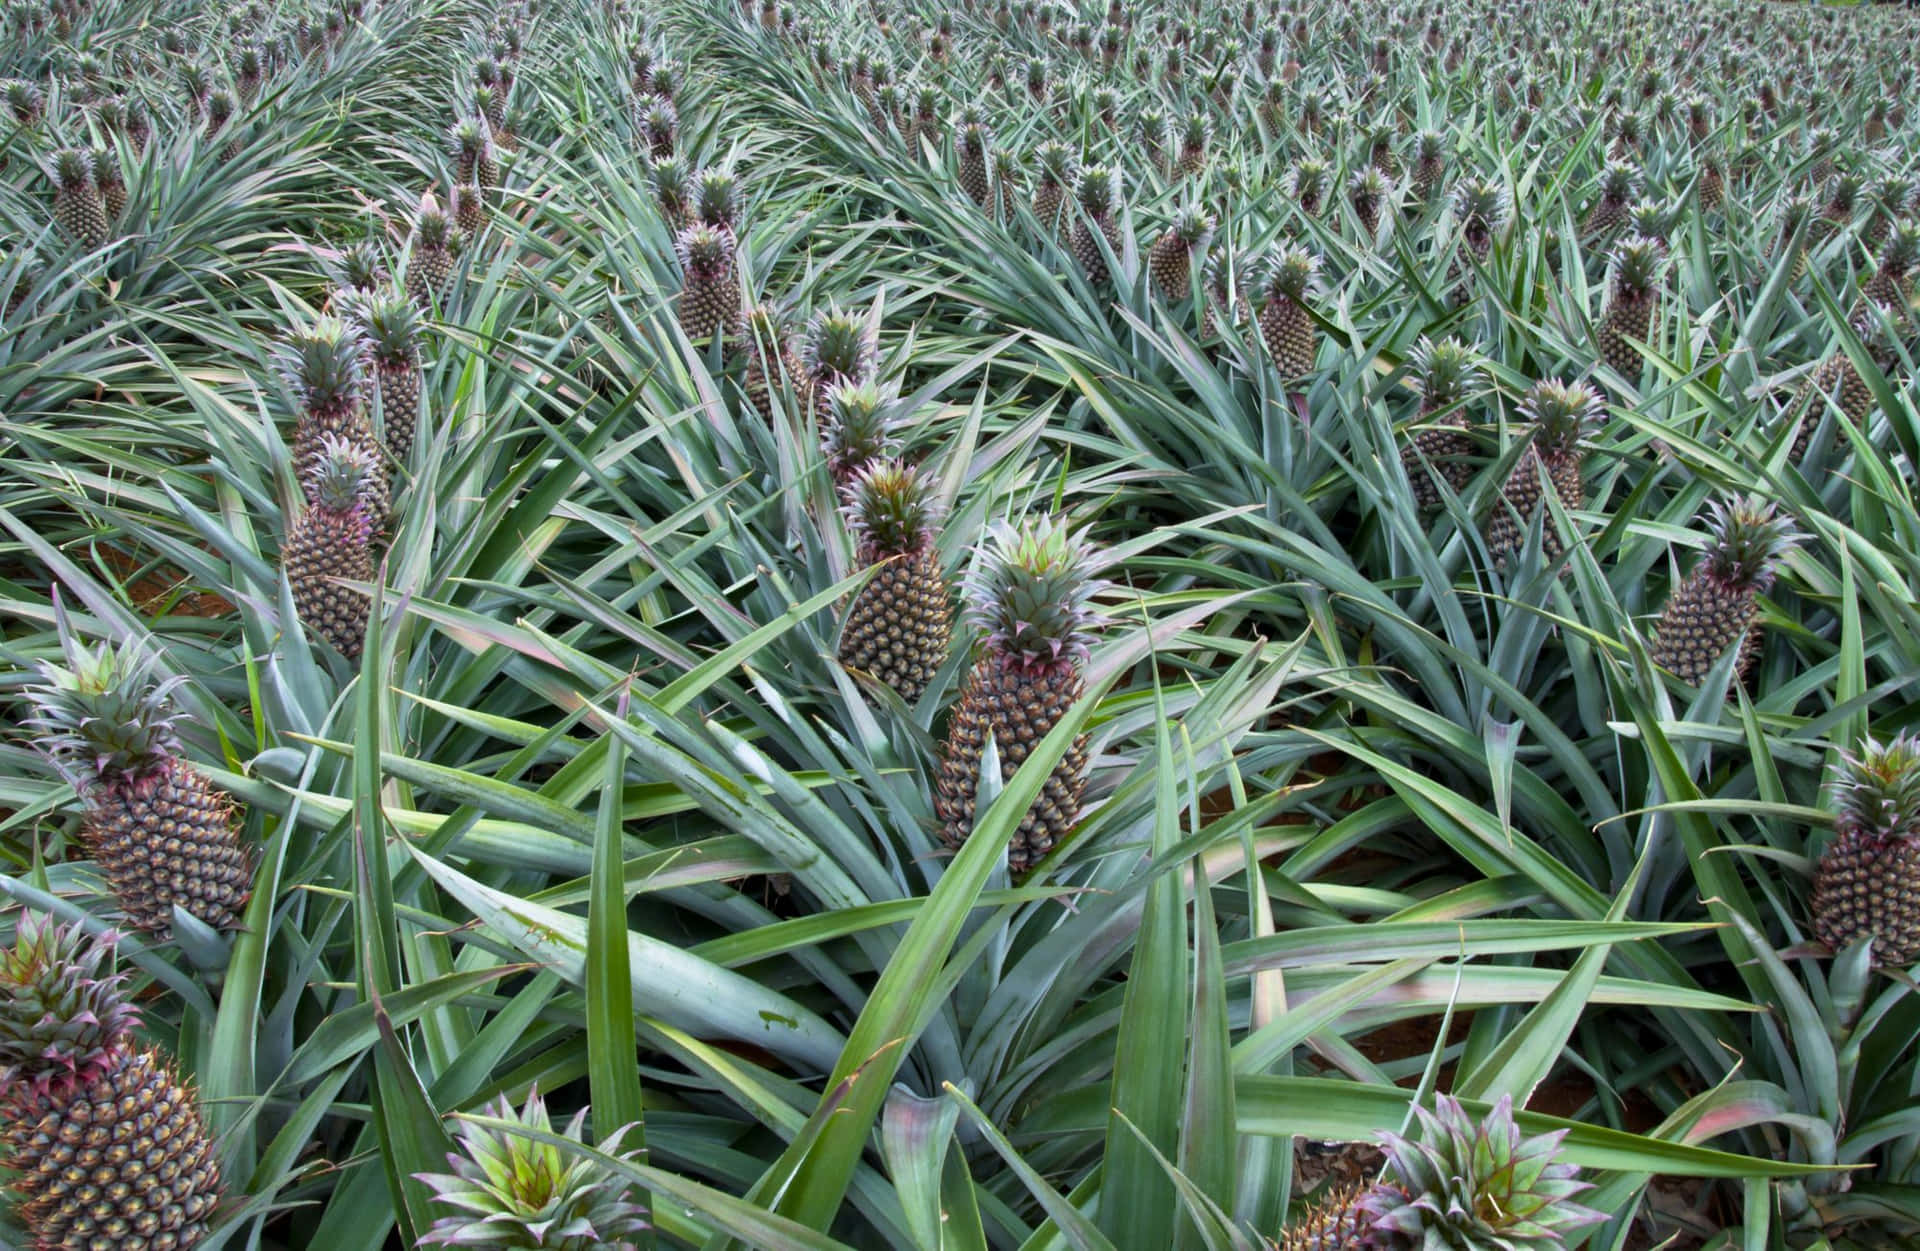 Fotodi Fotografia Di Un Campo Di Coltivazione Di Piante Di Ananas